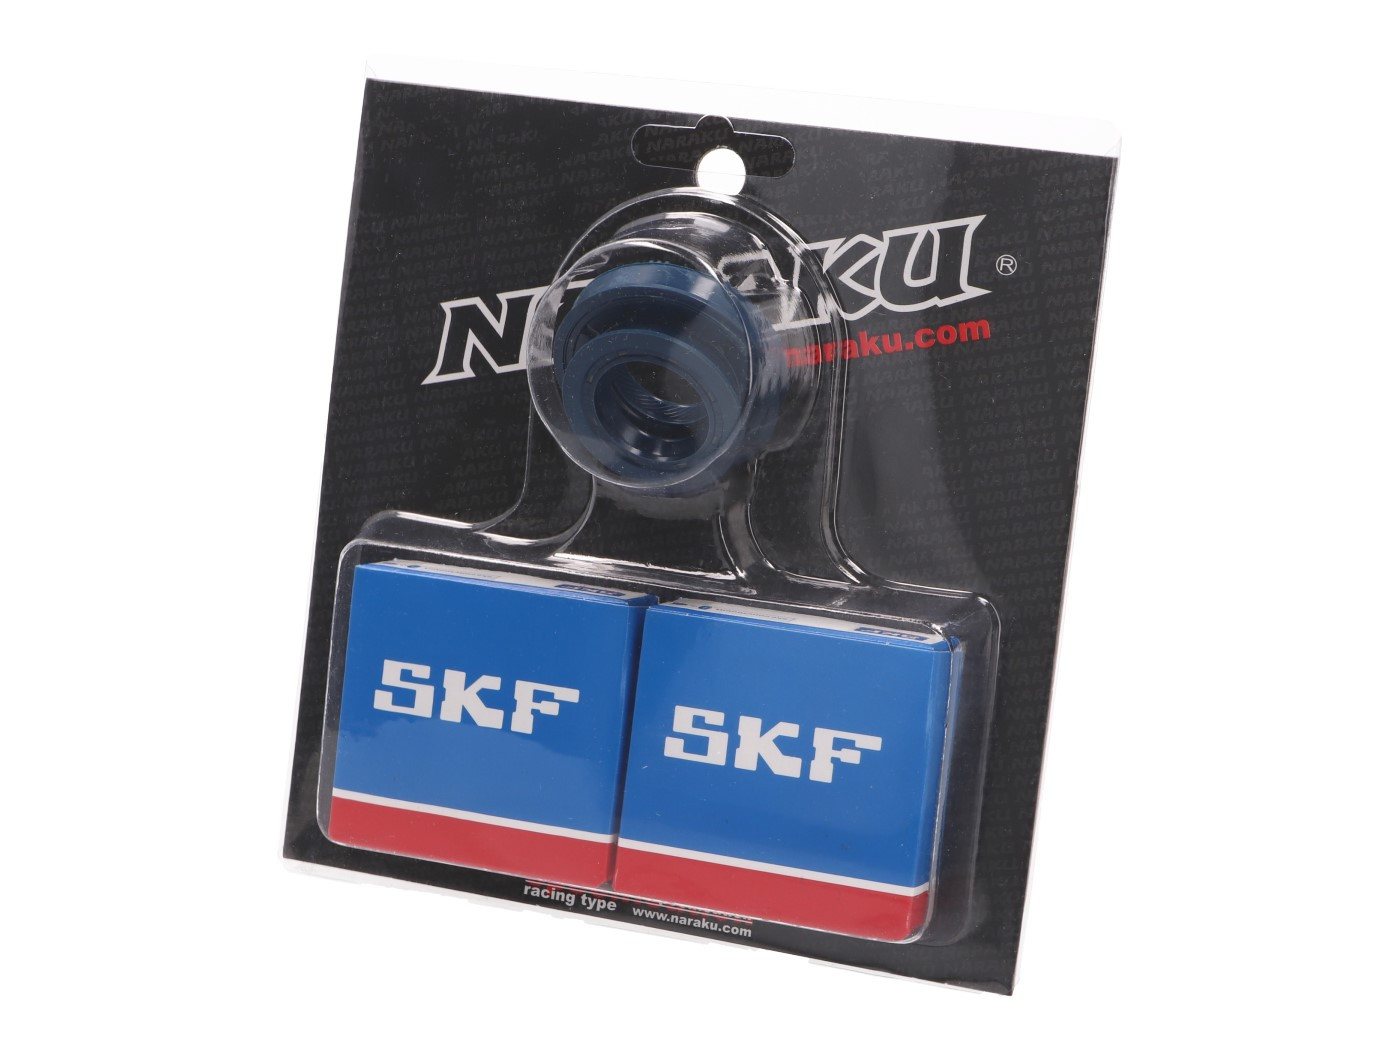 Főtengely csapágy szett Naraku SKF metal cage - Minarelli CW, MA, MY, CA, CY